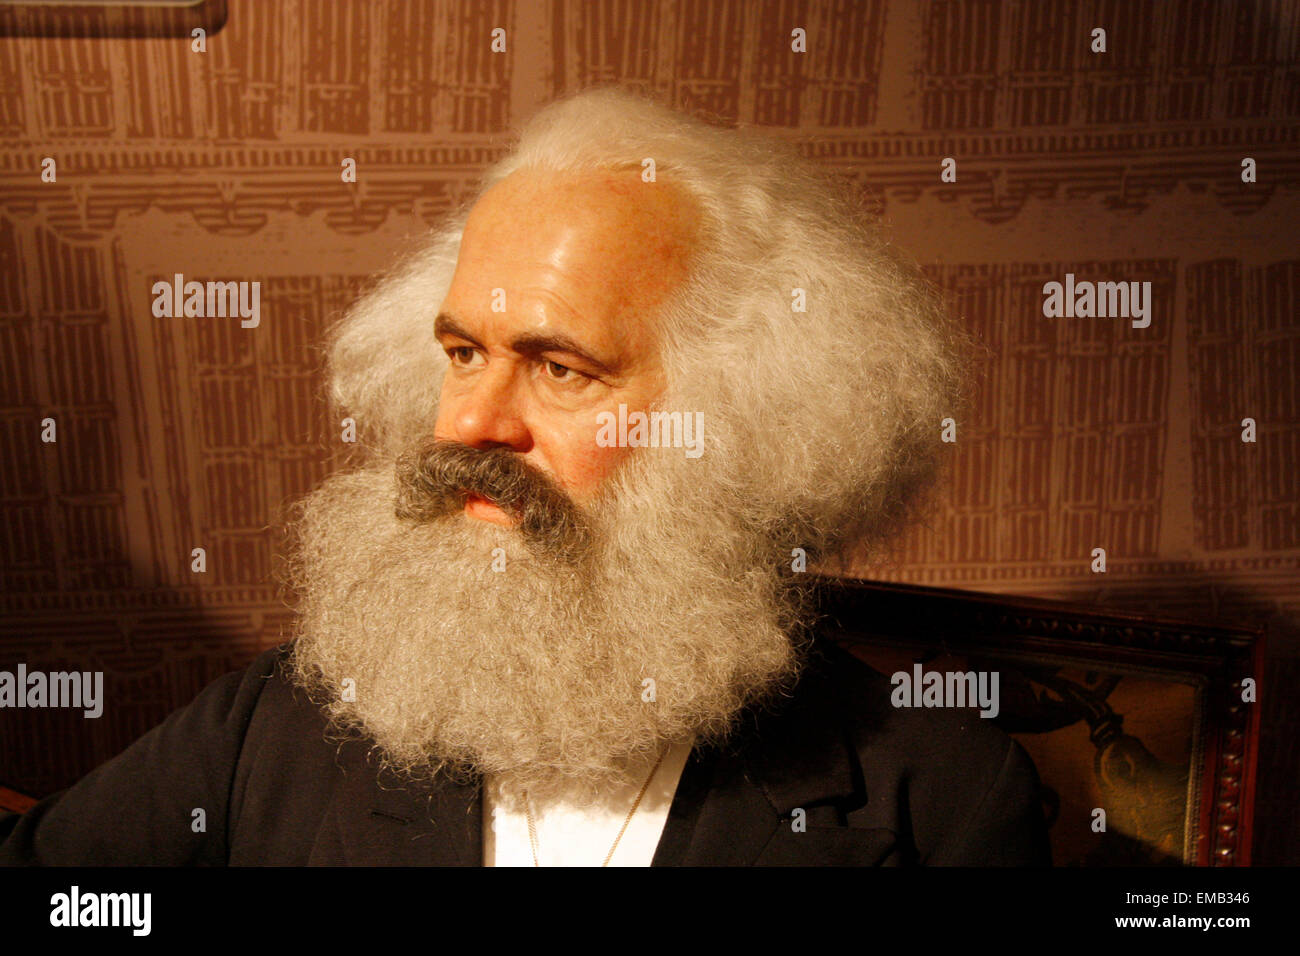 Karl Marx - Wachsfigur bei Madame Tussauds, 10. Juli 2008, Unter den Linden, Berlin-Mitte. Stock Photo